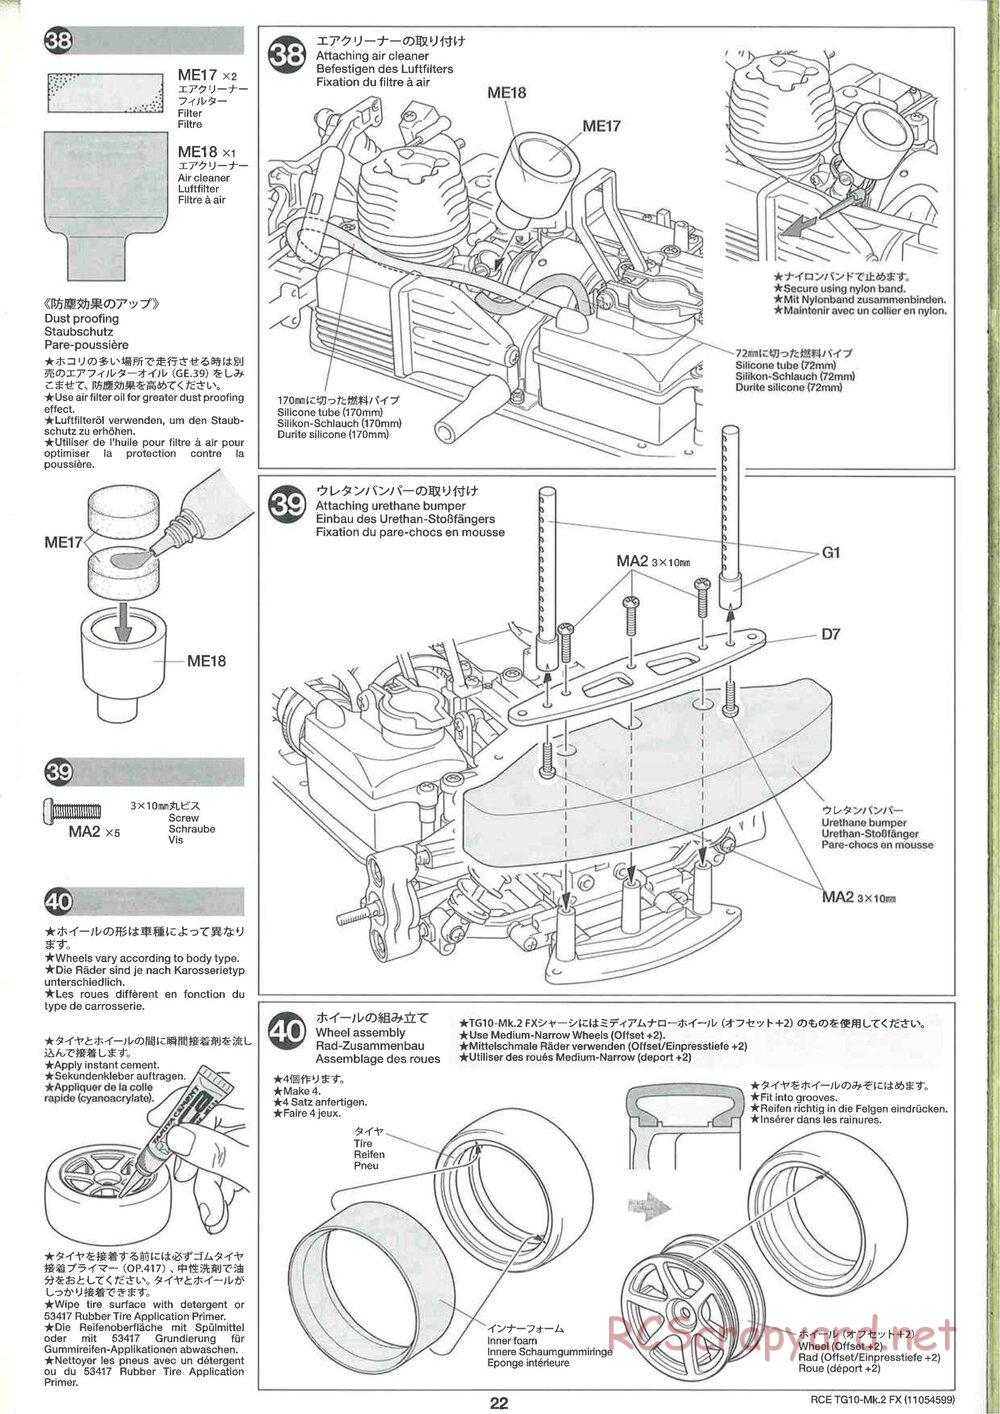 Tamiya - TG10 Mk.2 FX Chassis - Manual - Page 22